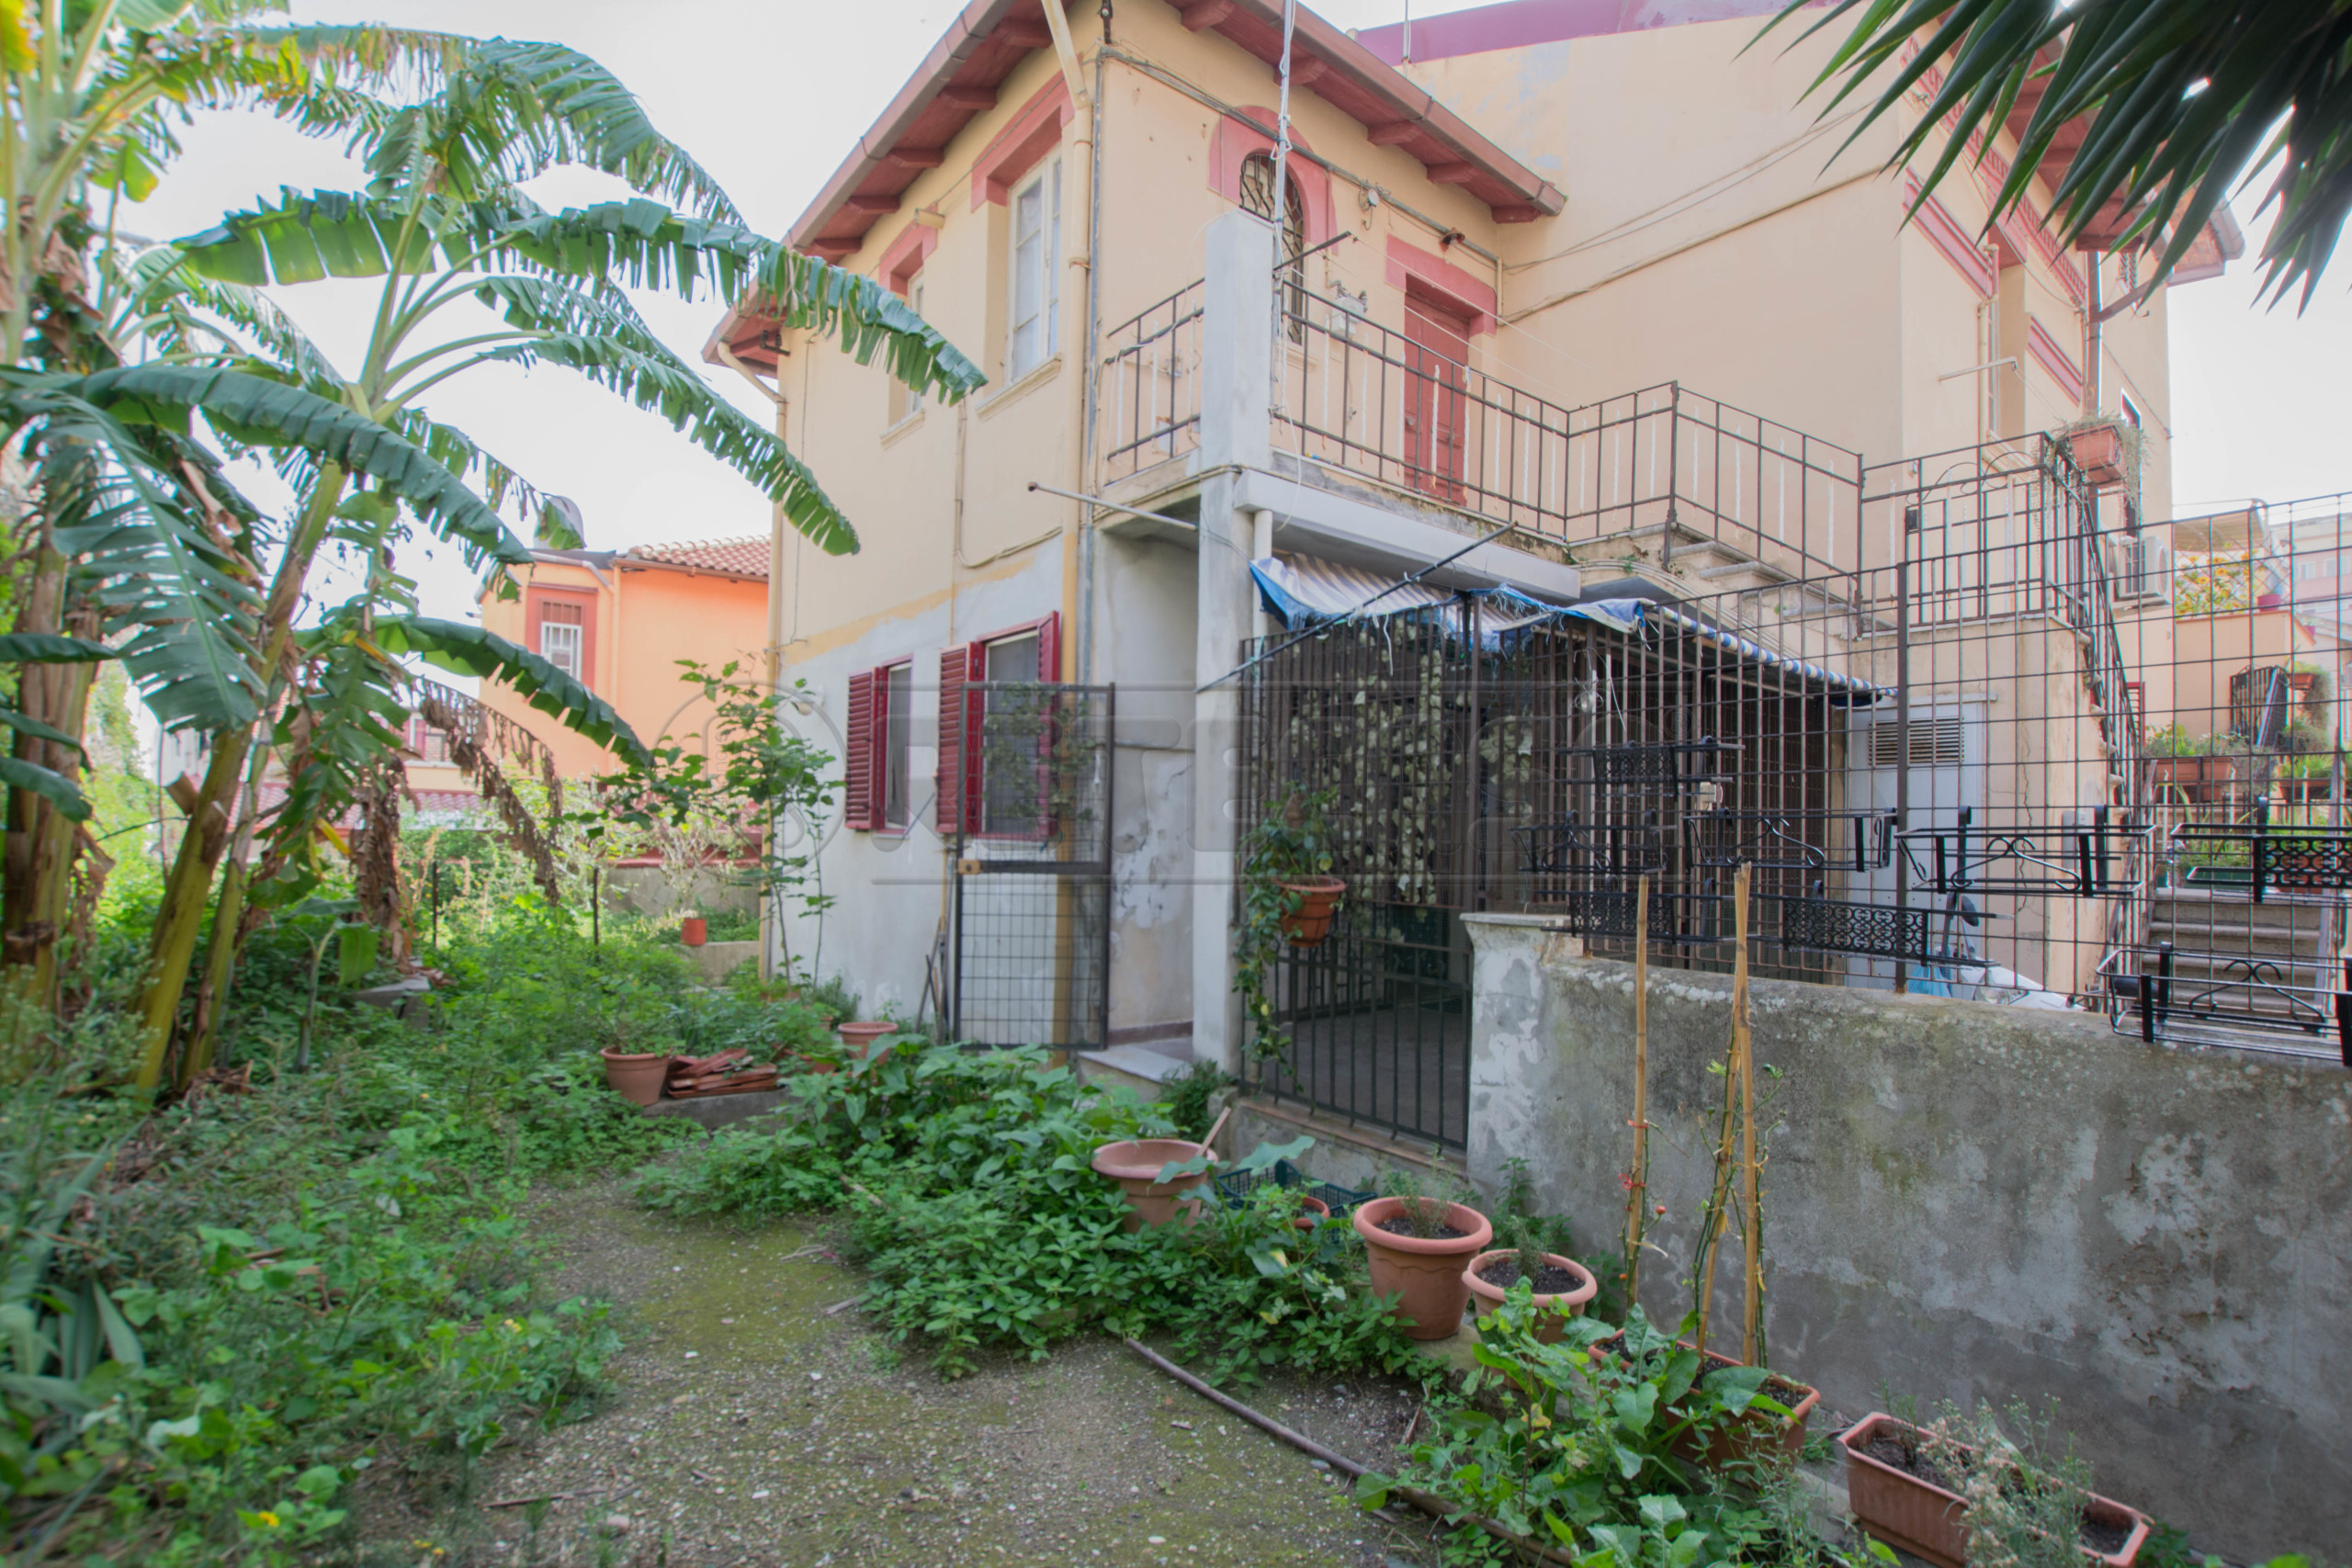 Casa indipendente con giardino in via san marco 10, Messina